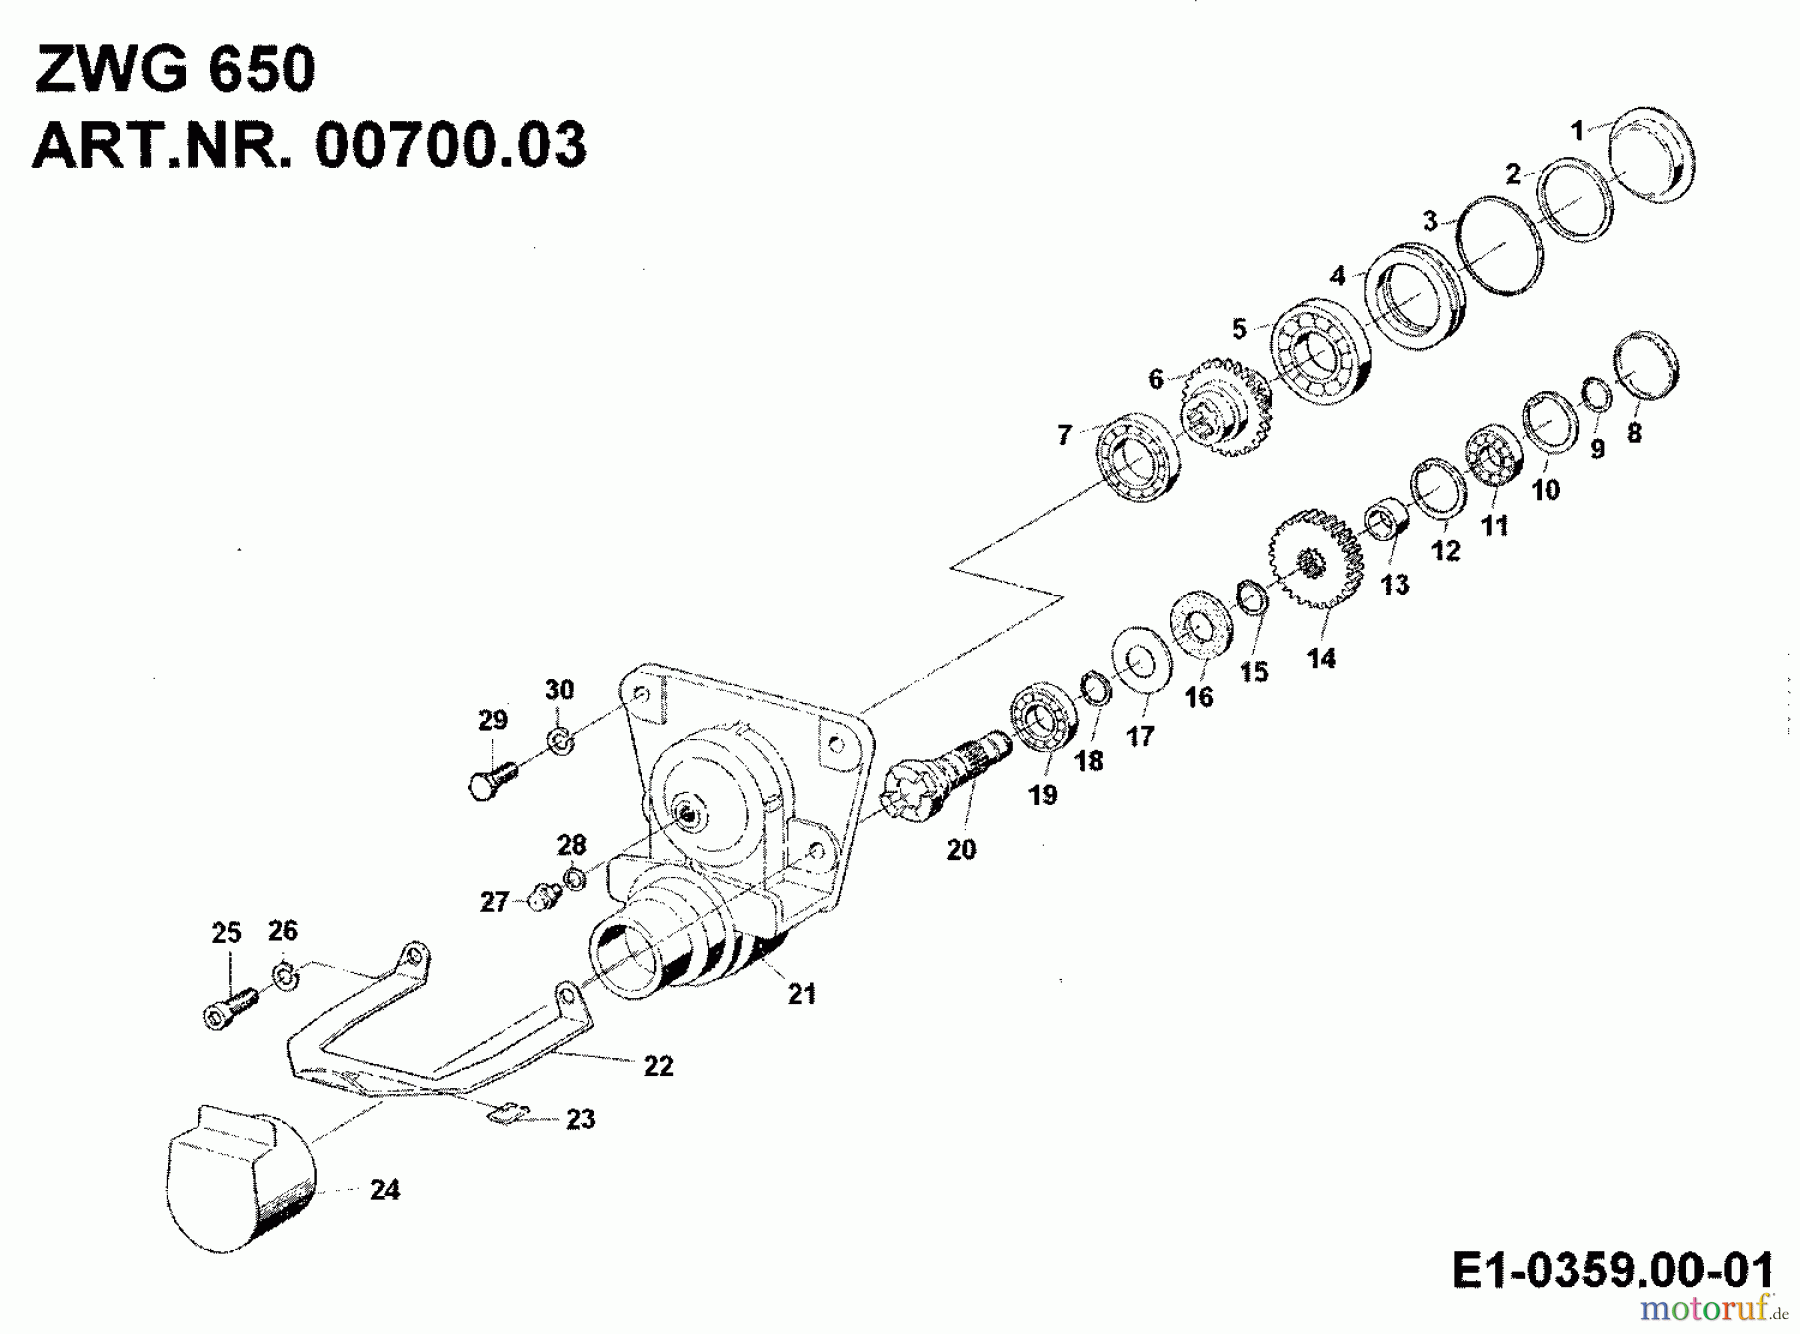  MTD Accèssoires Accèssoires motoculteur Boîte de vitesse intermédiaire ZWG 650 pour BF 650 N 00700.03  (1994) Machine de base